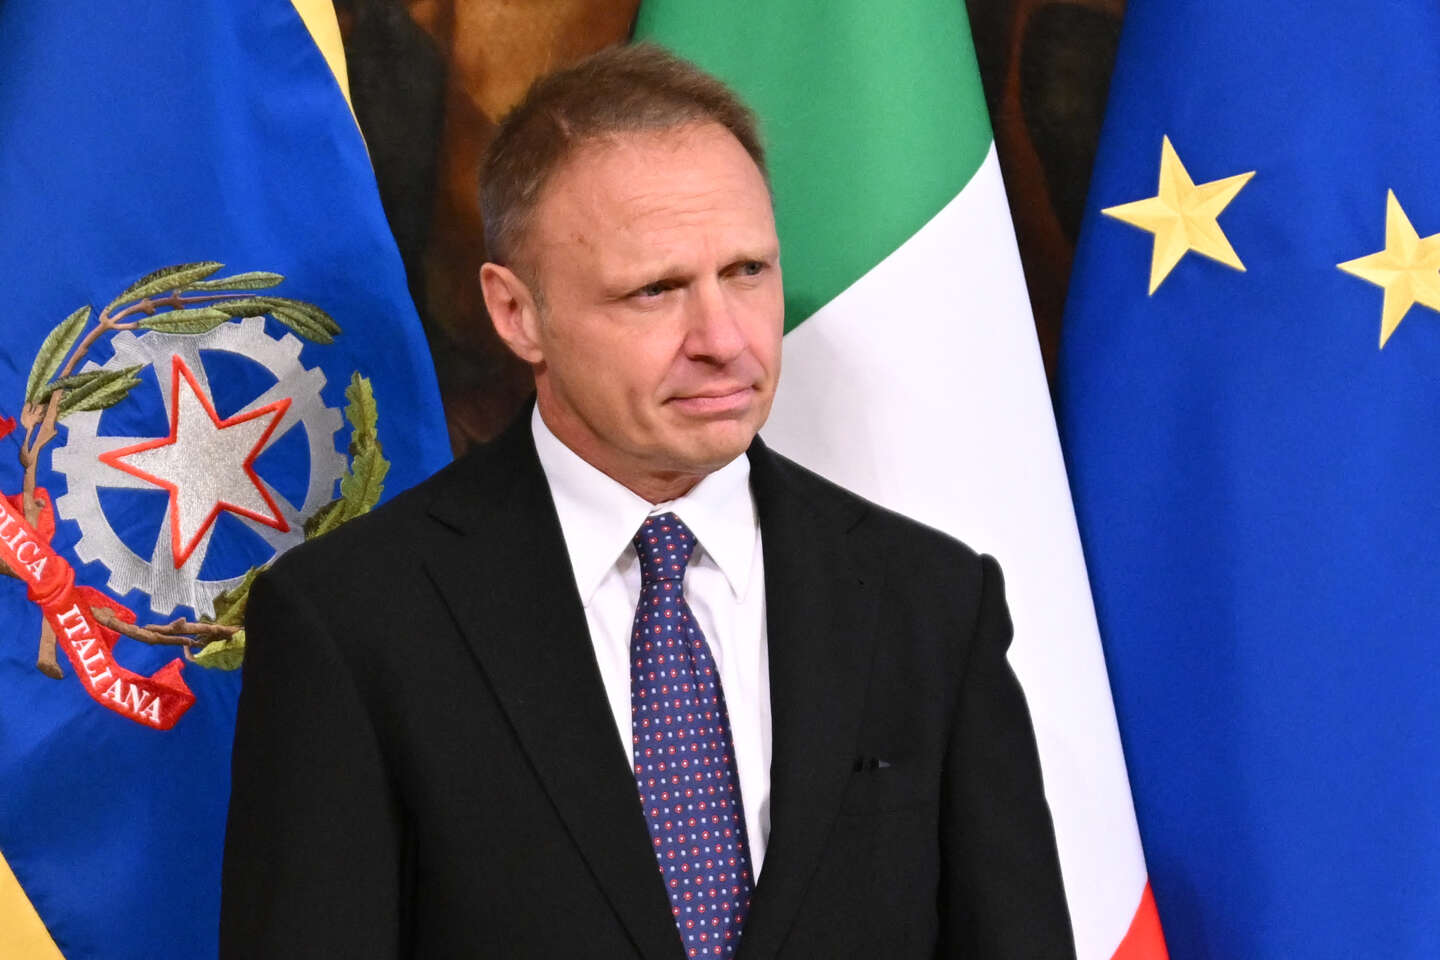 Il ministro in Italia mette in guardia dalla “sostituzione etnica”